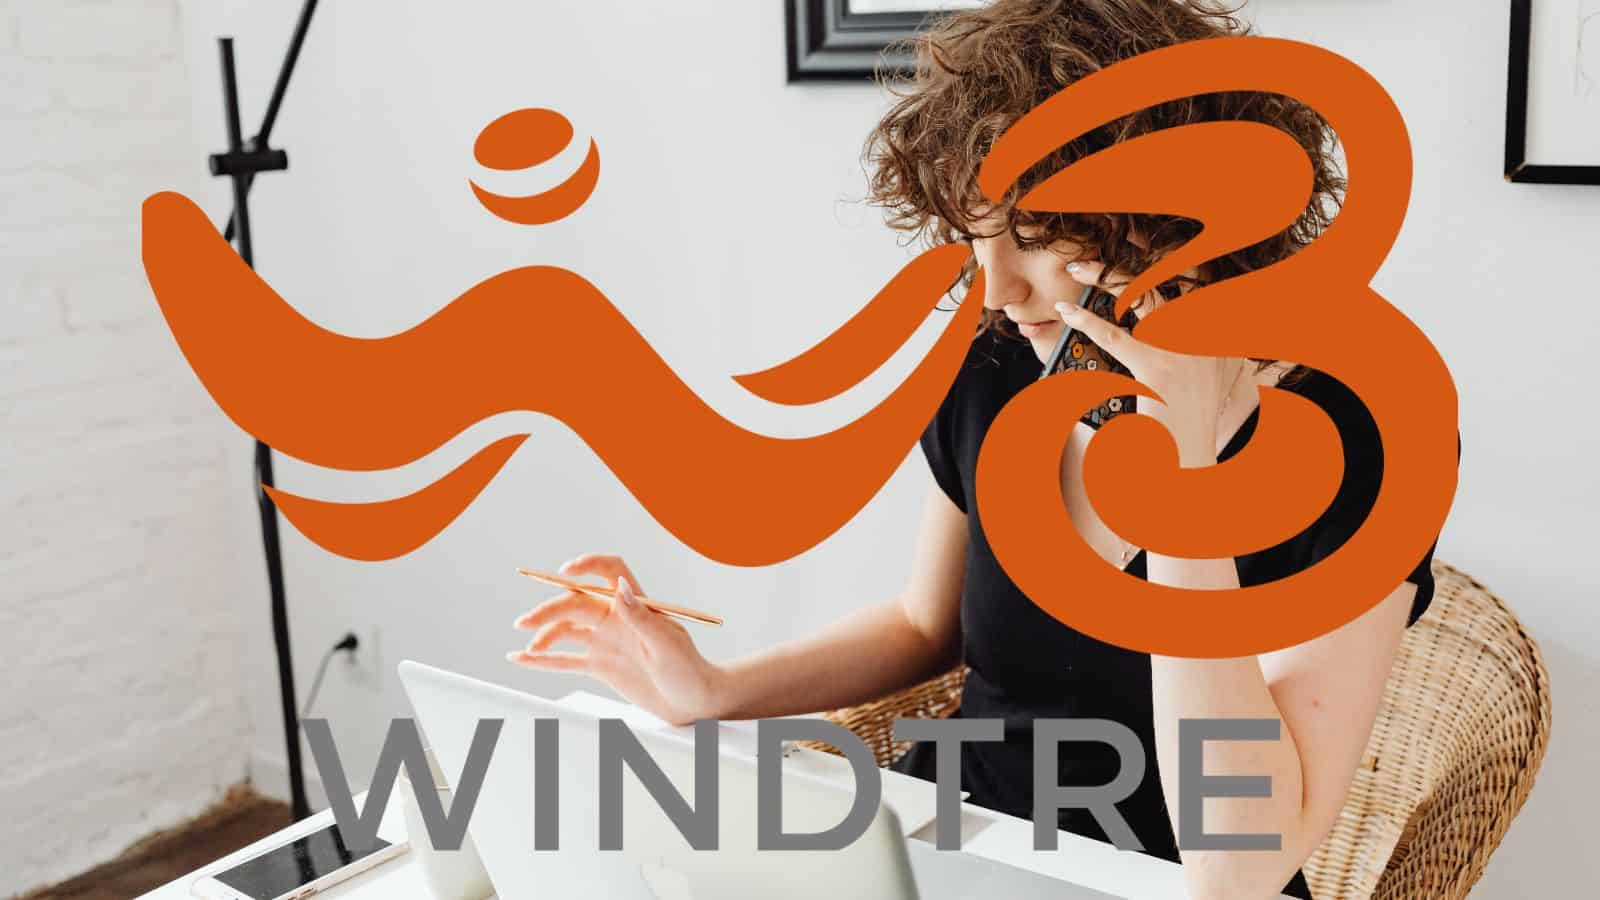 WindTre: per i nuovi utenti arriva 